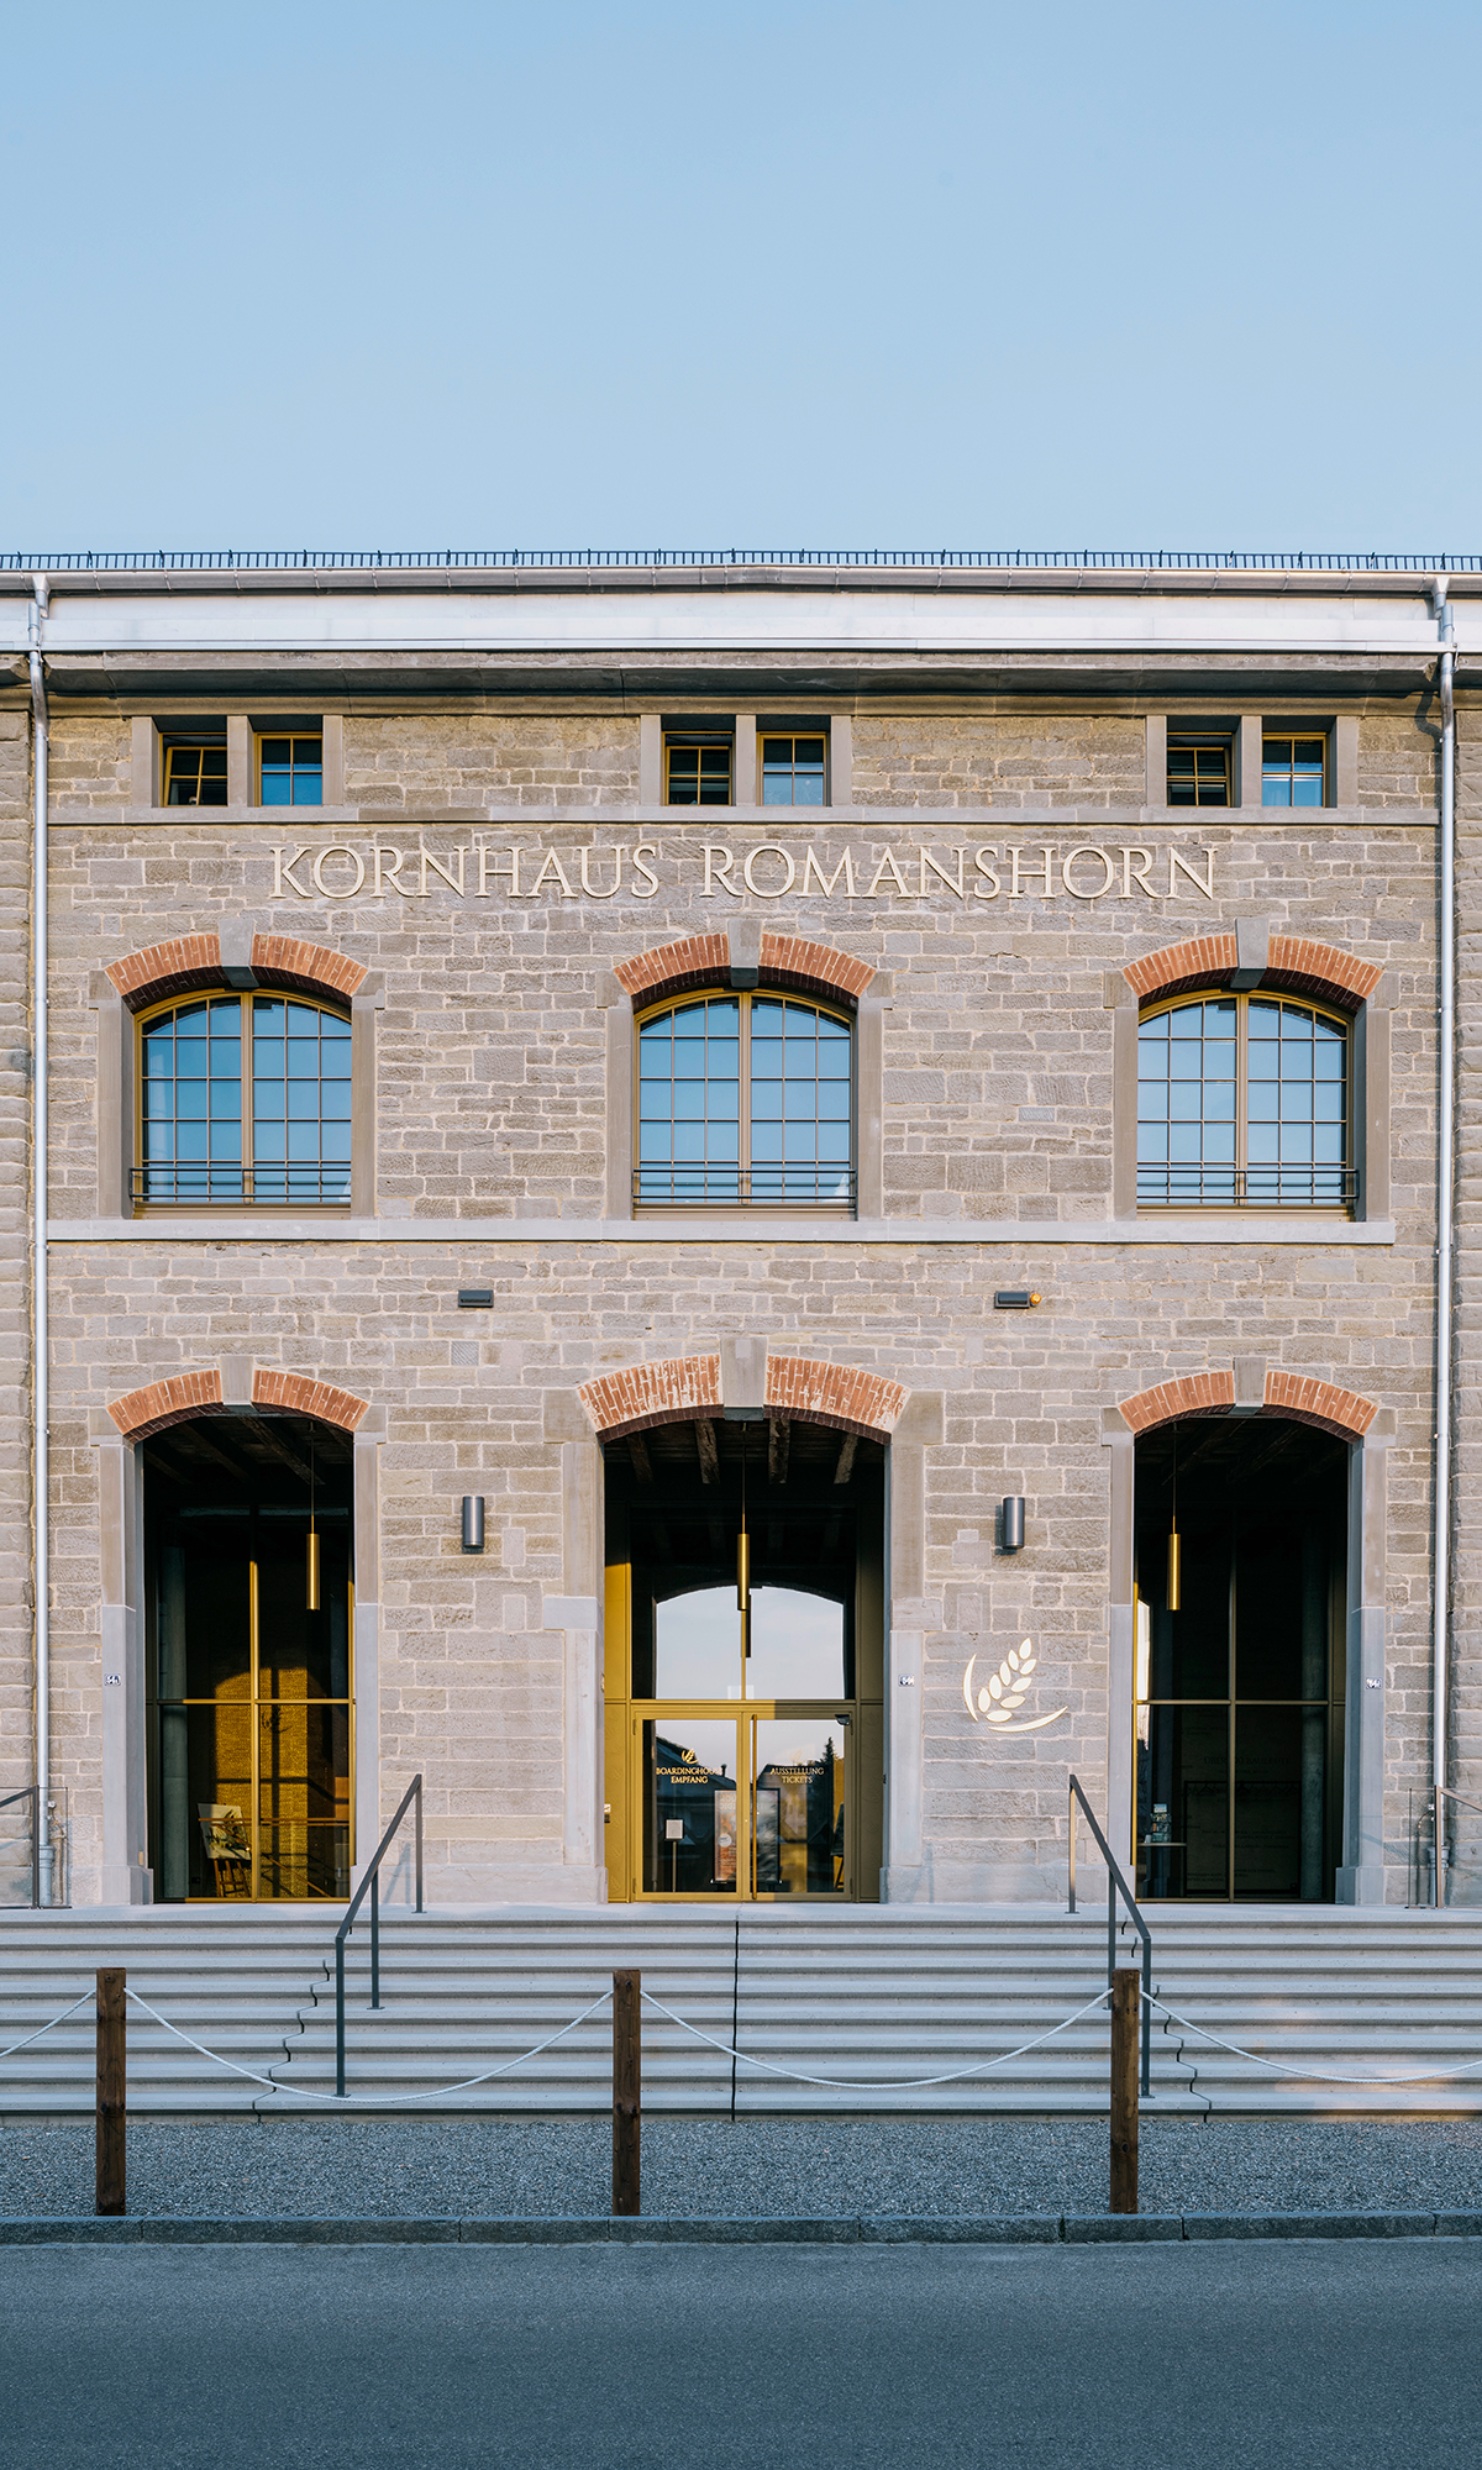 Eingang des Kornhauses Romanshorn mit historischer Fassade